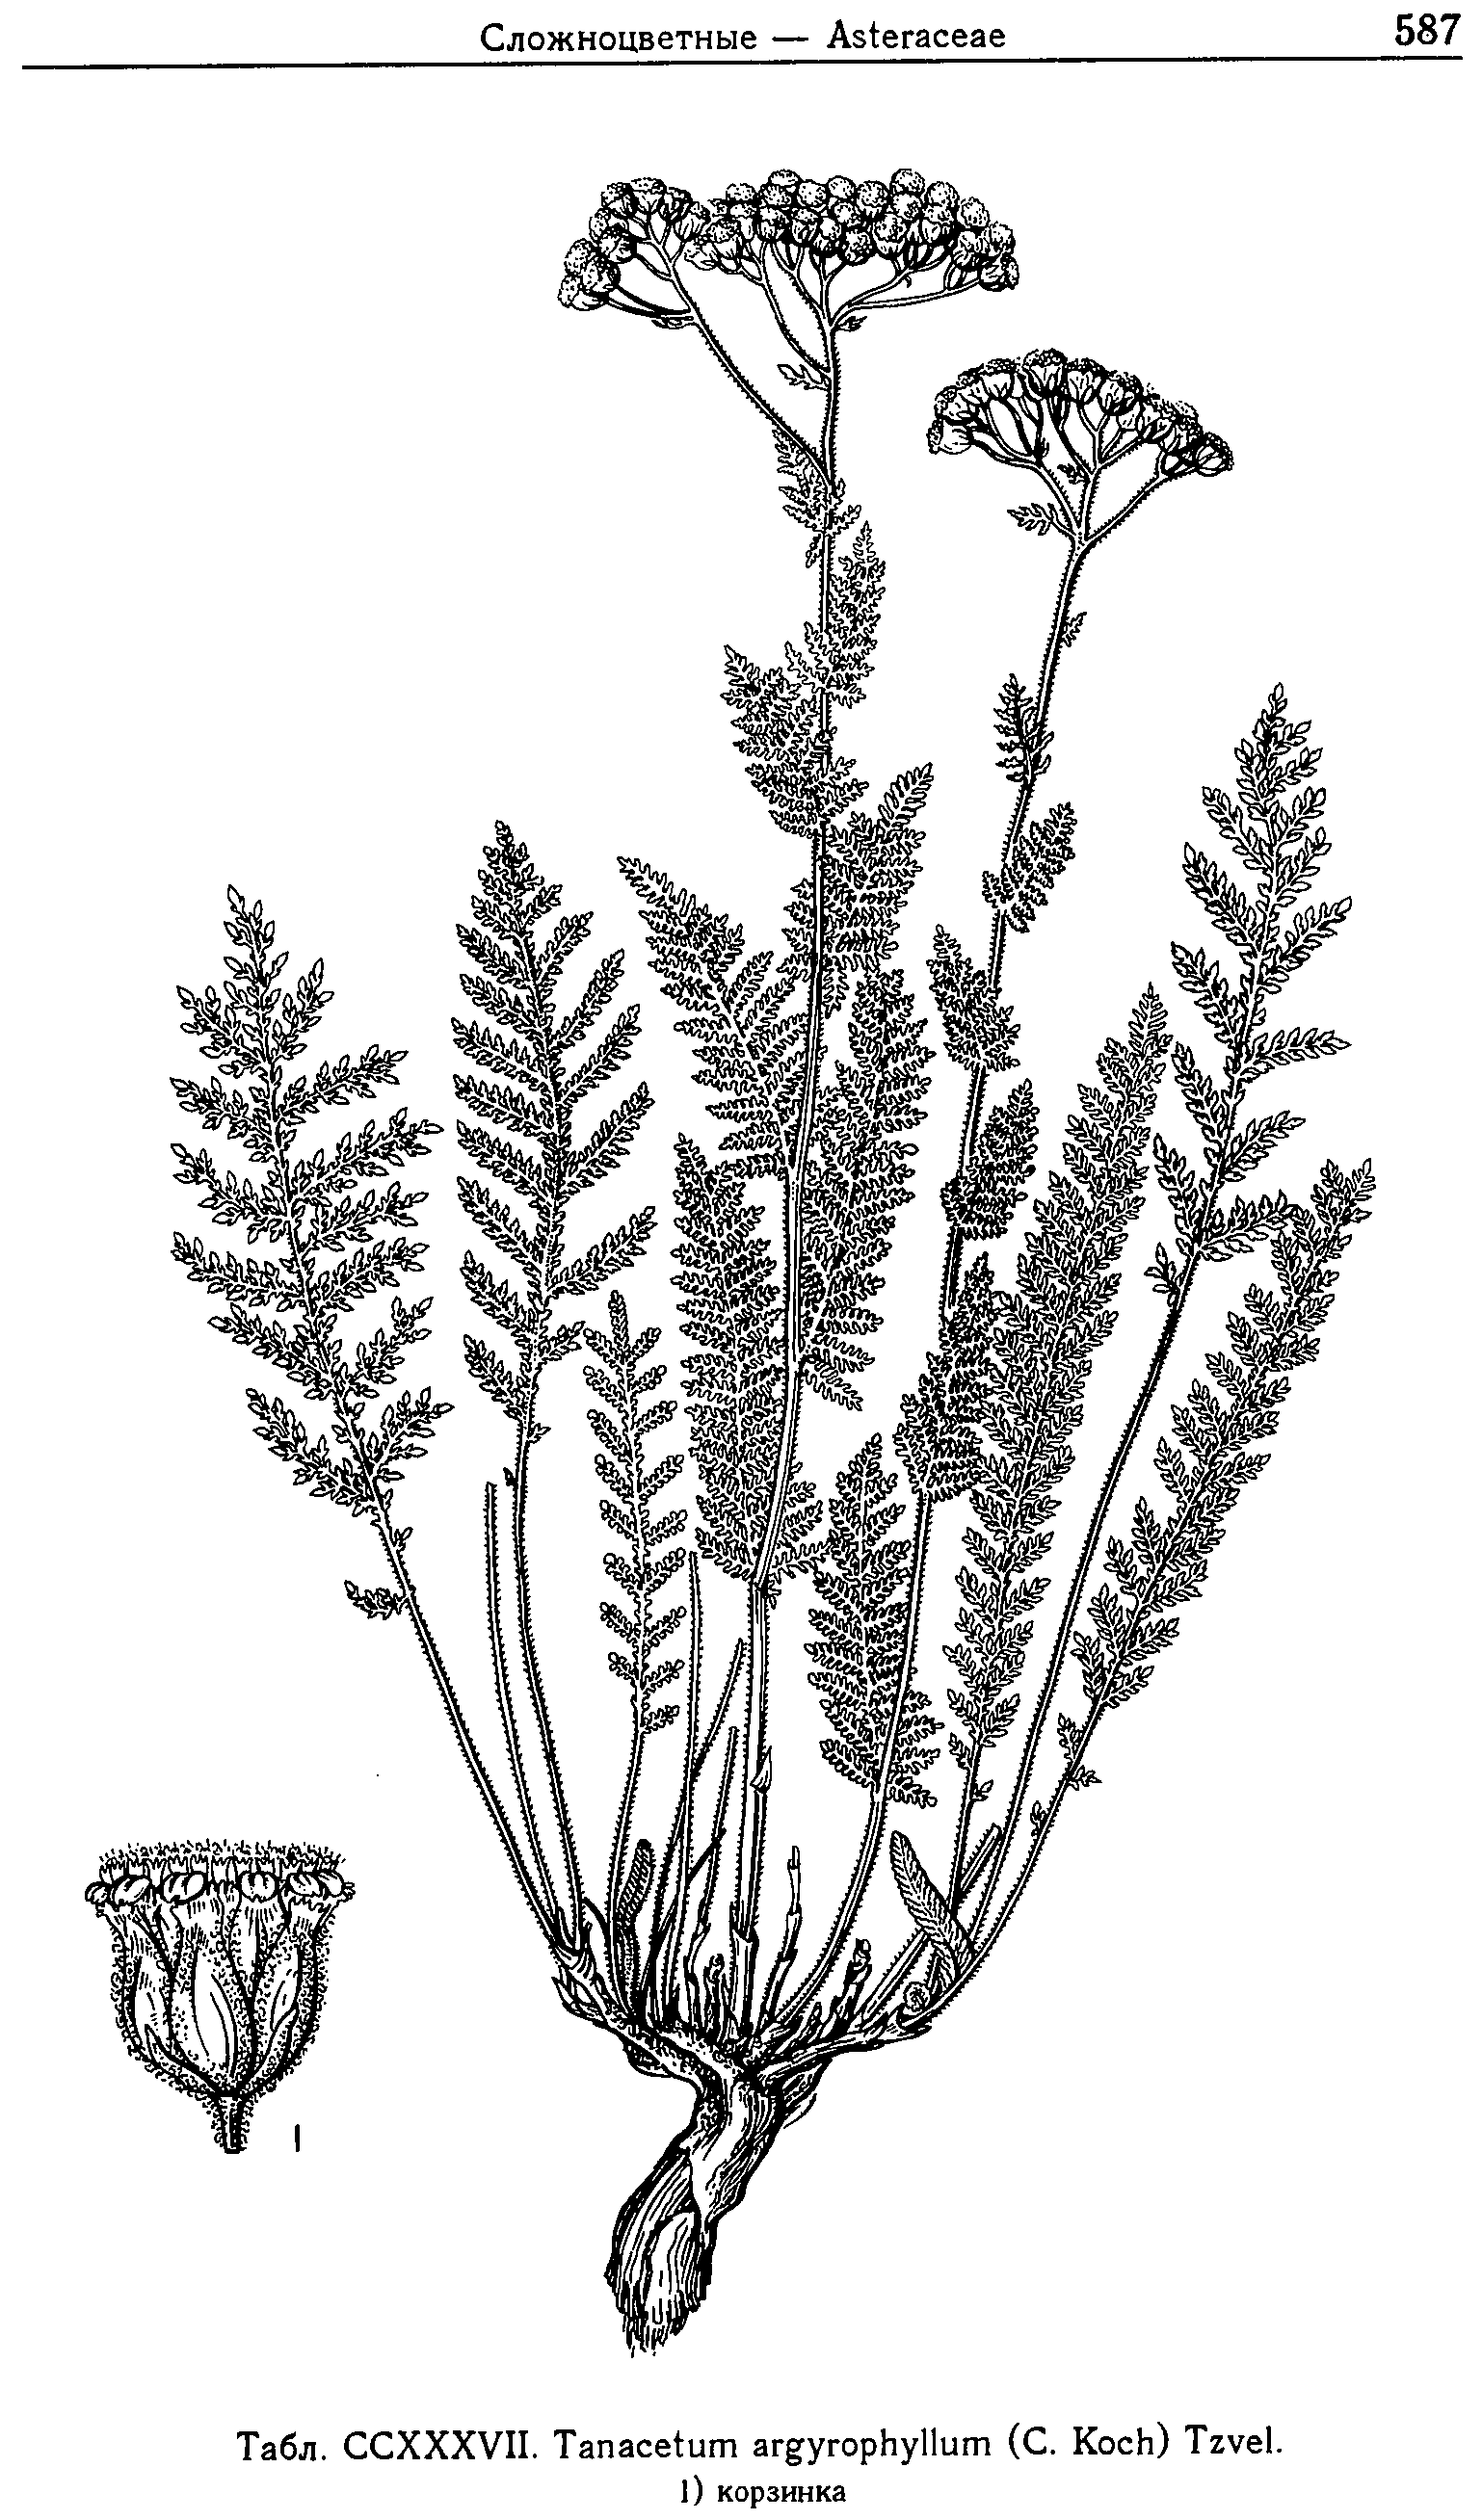 Tanacetum_argyrophyllum_2a.png